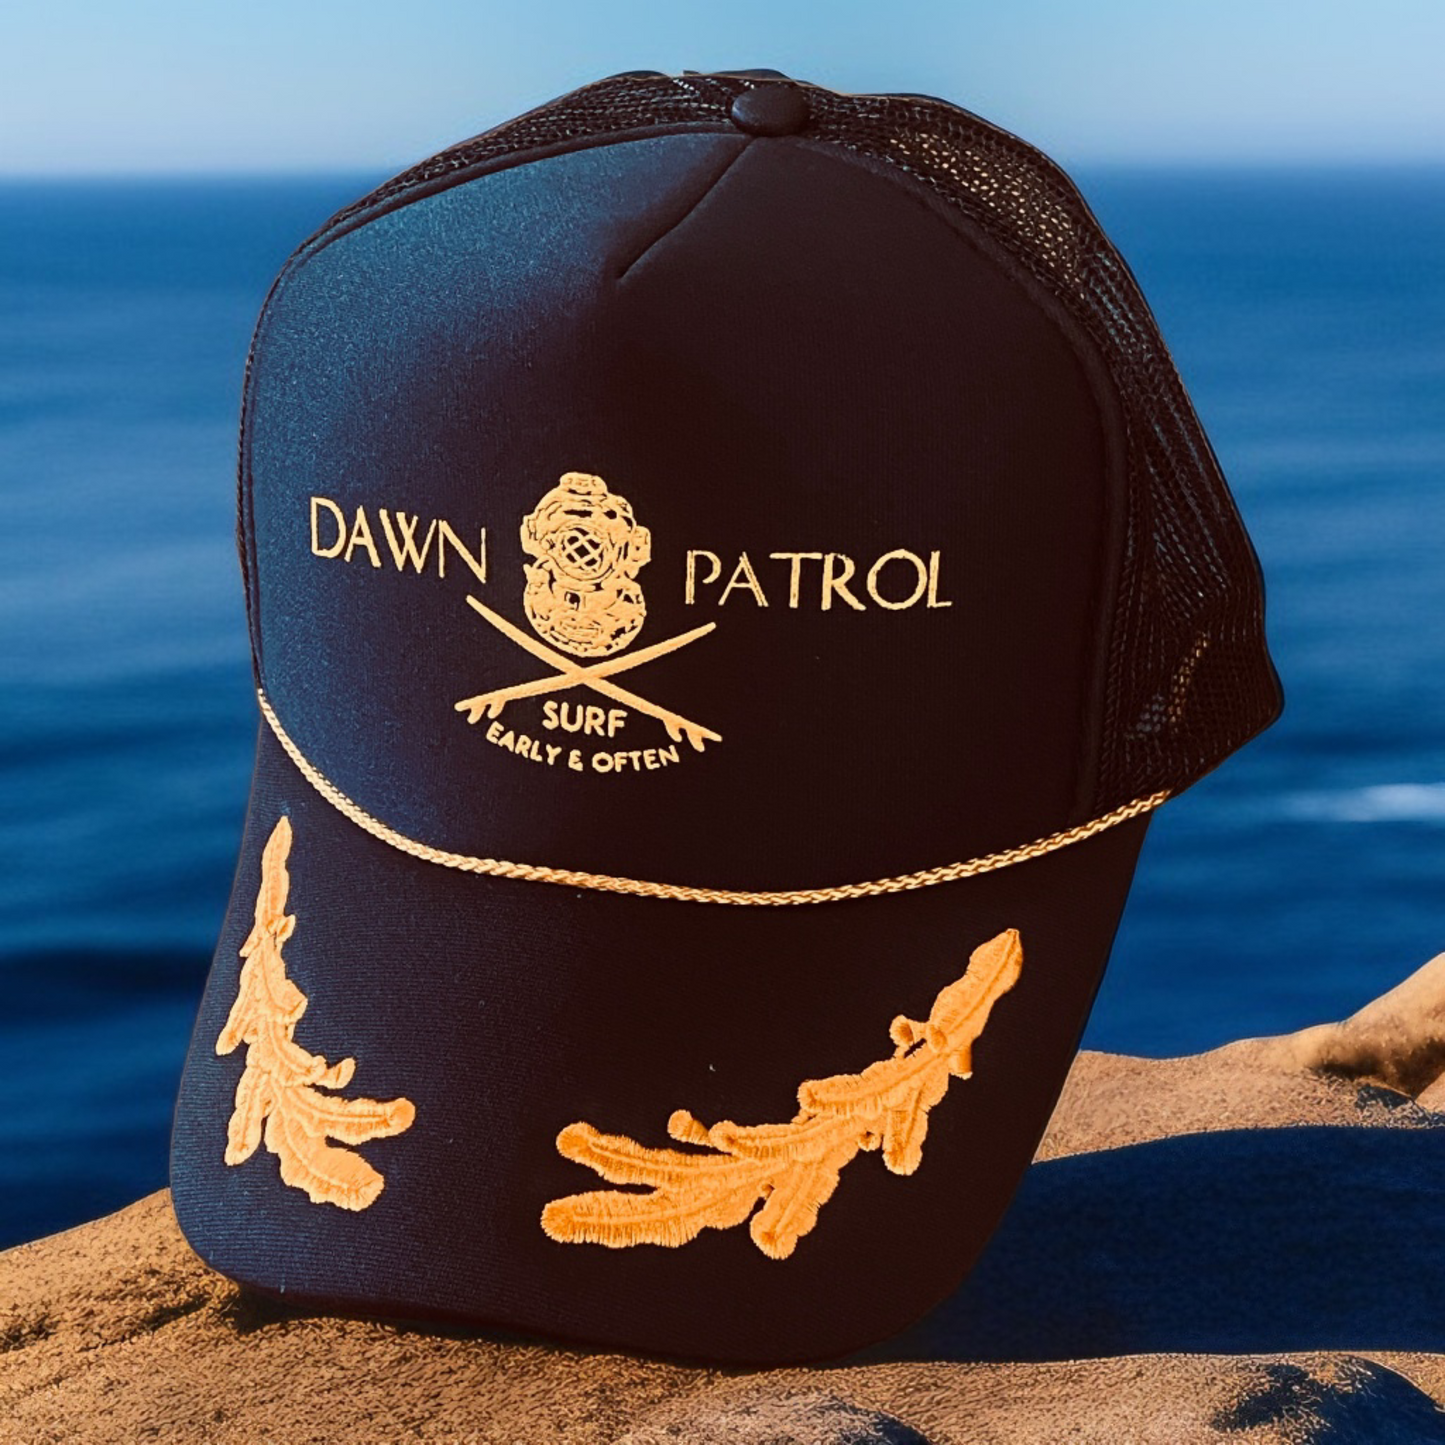 Dawn Patrol Trucker Hat